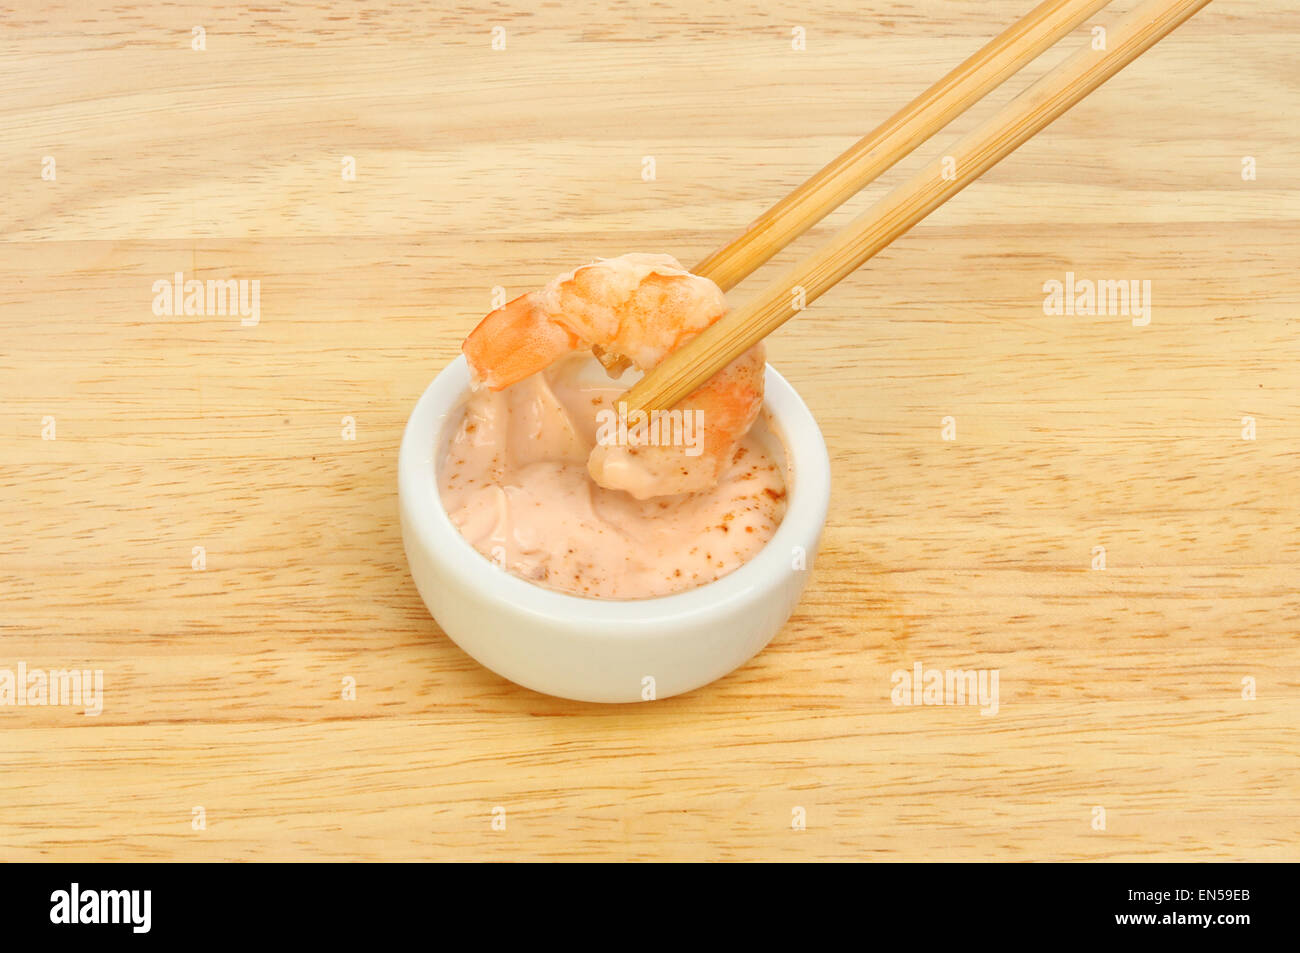 Kingsize-Garnelen in Stäbchen eintauchen in Meeresfrüchte-Sauce in ein Töpfchen auf einem Holzbrett Stockfoto